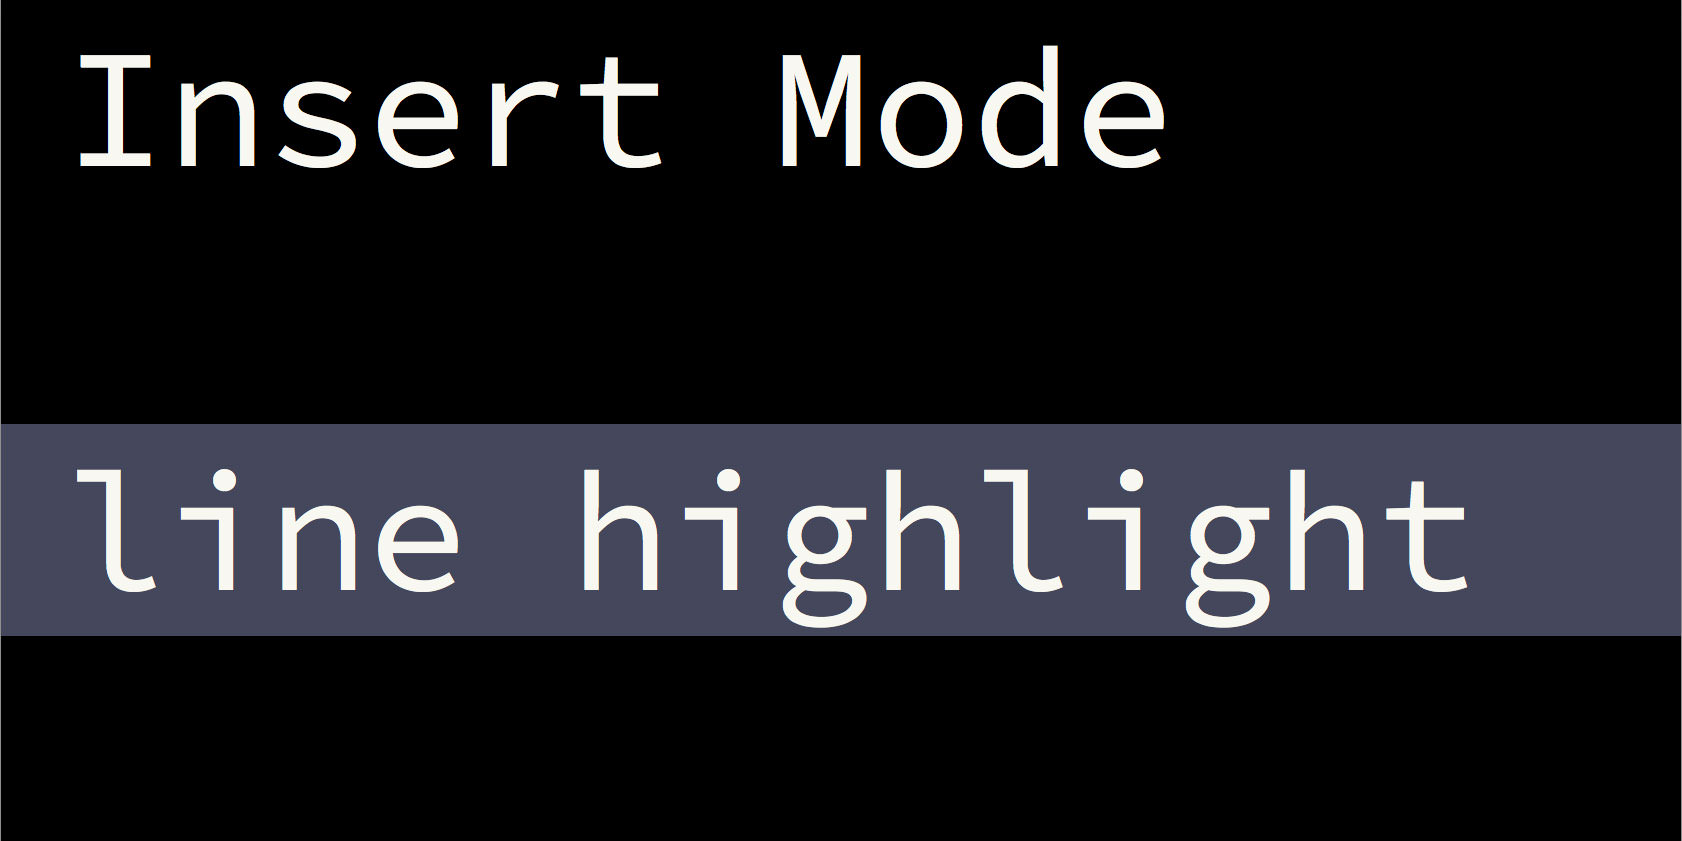 Line highlightin in Insert mode